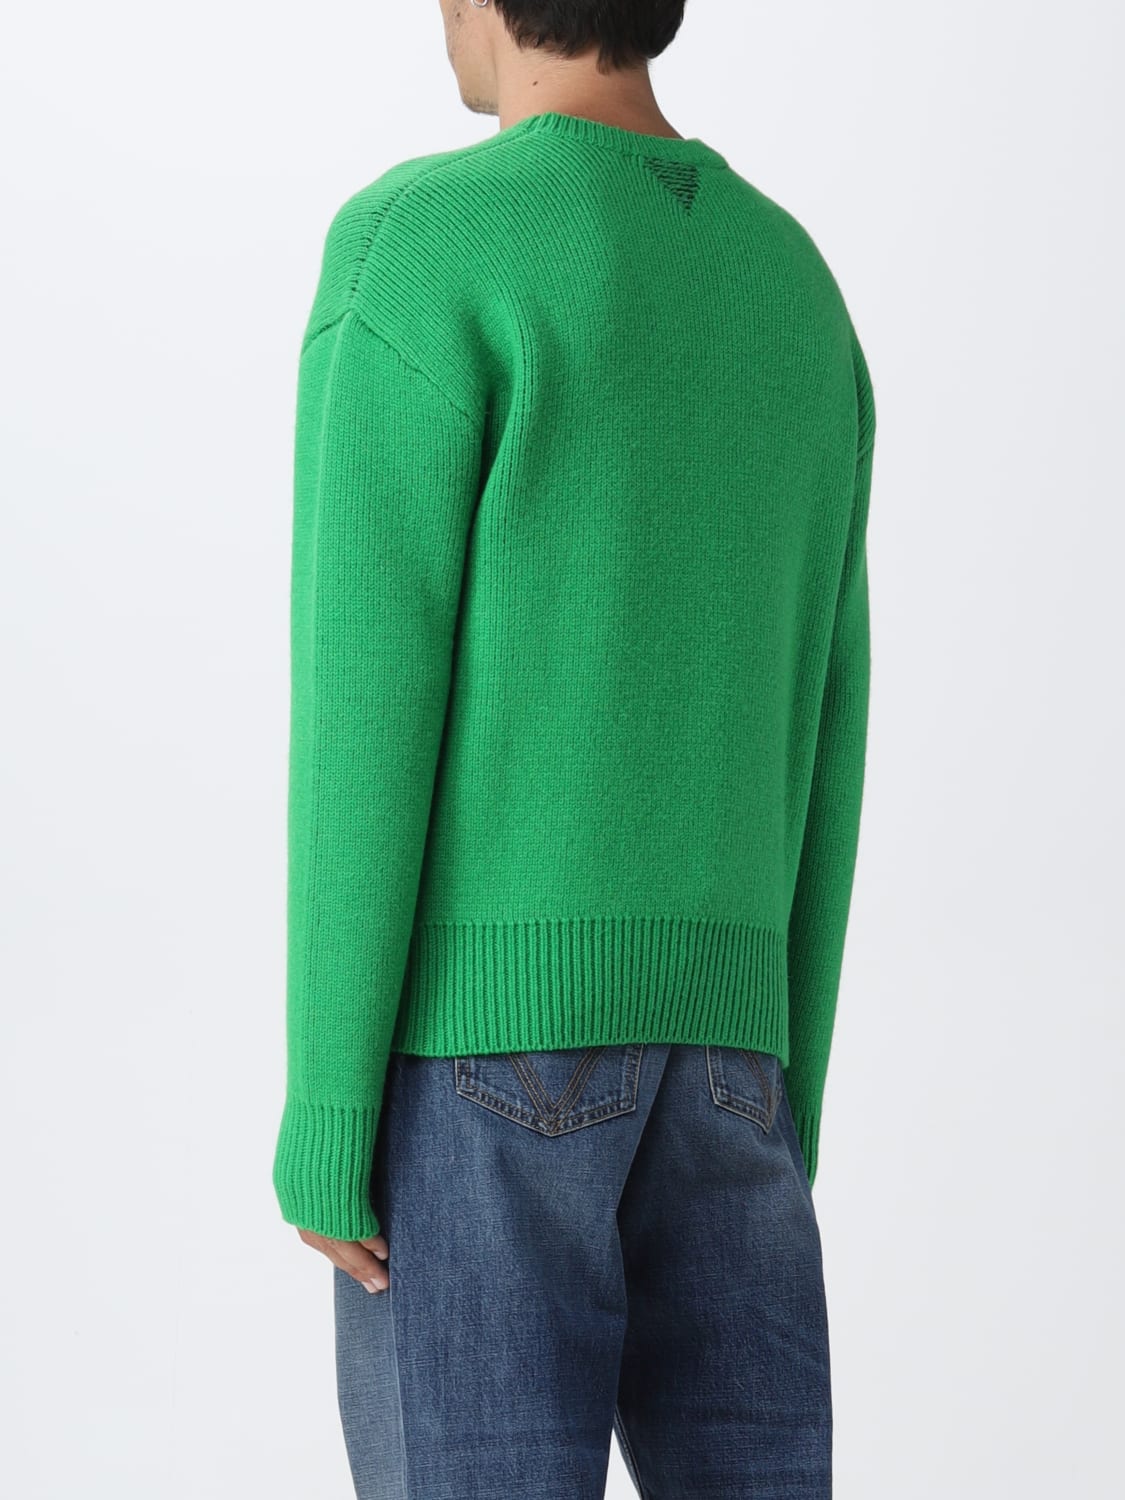 BOTTEGA VENETA: basic sweater - Green | Bottega Veneta sweater